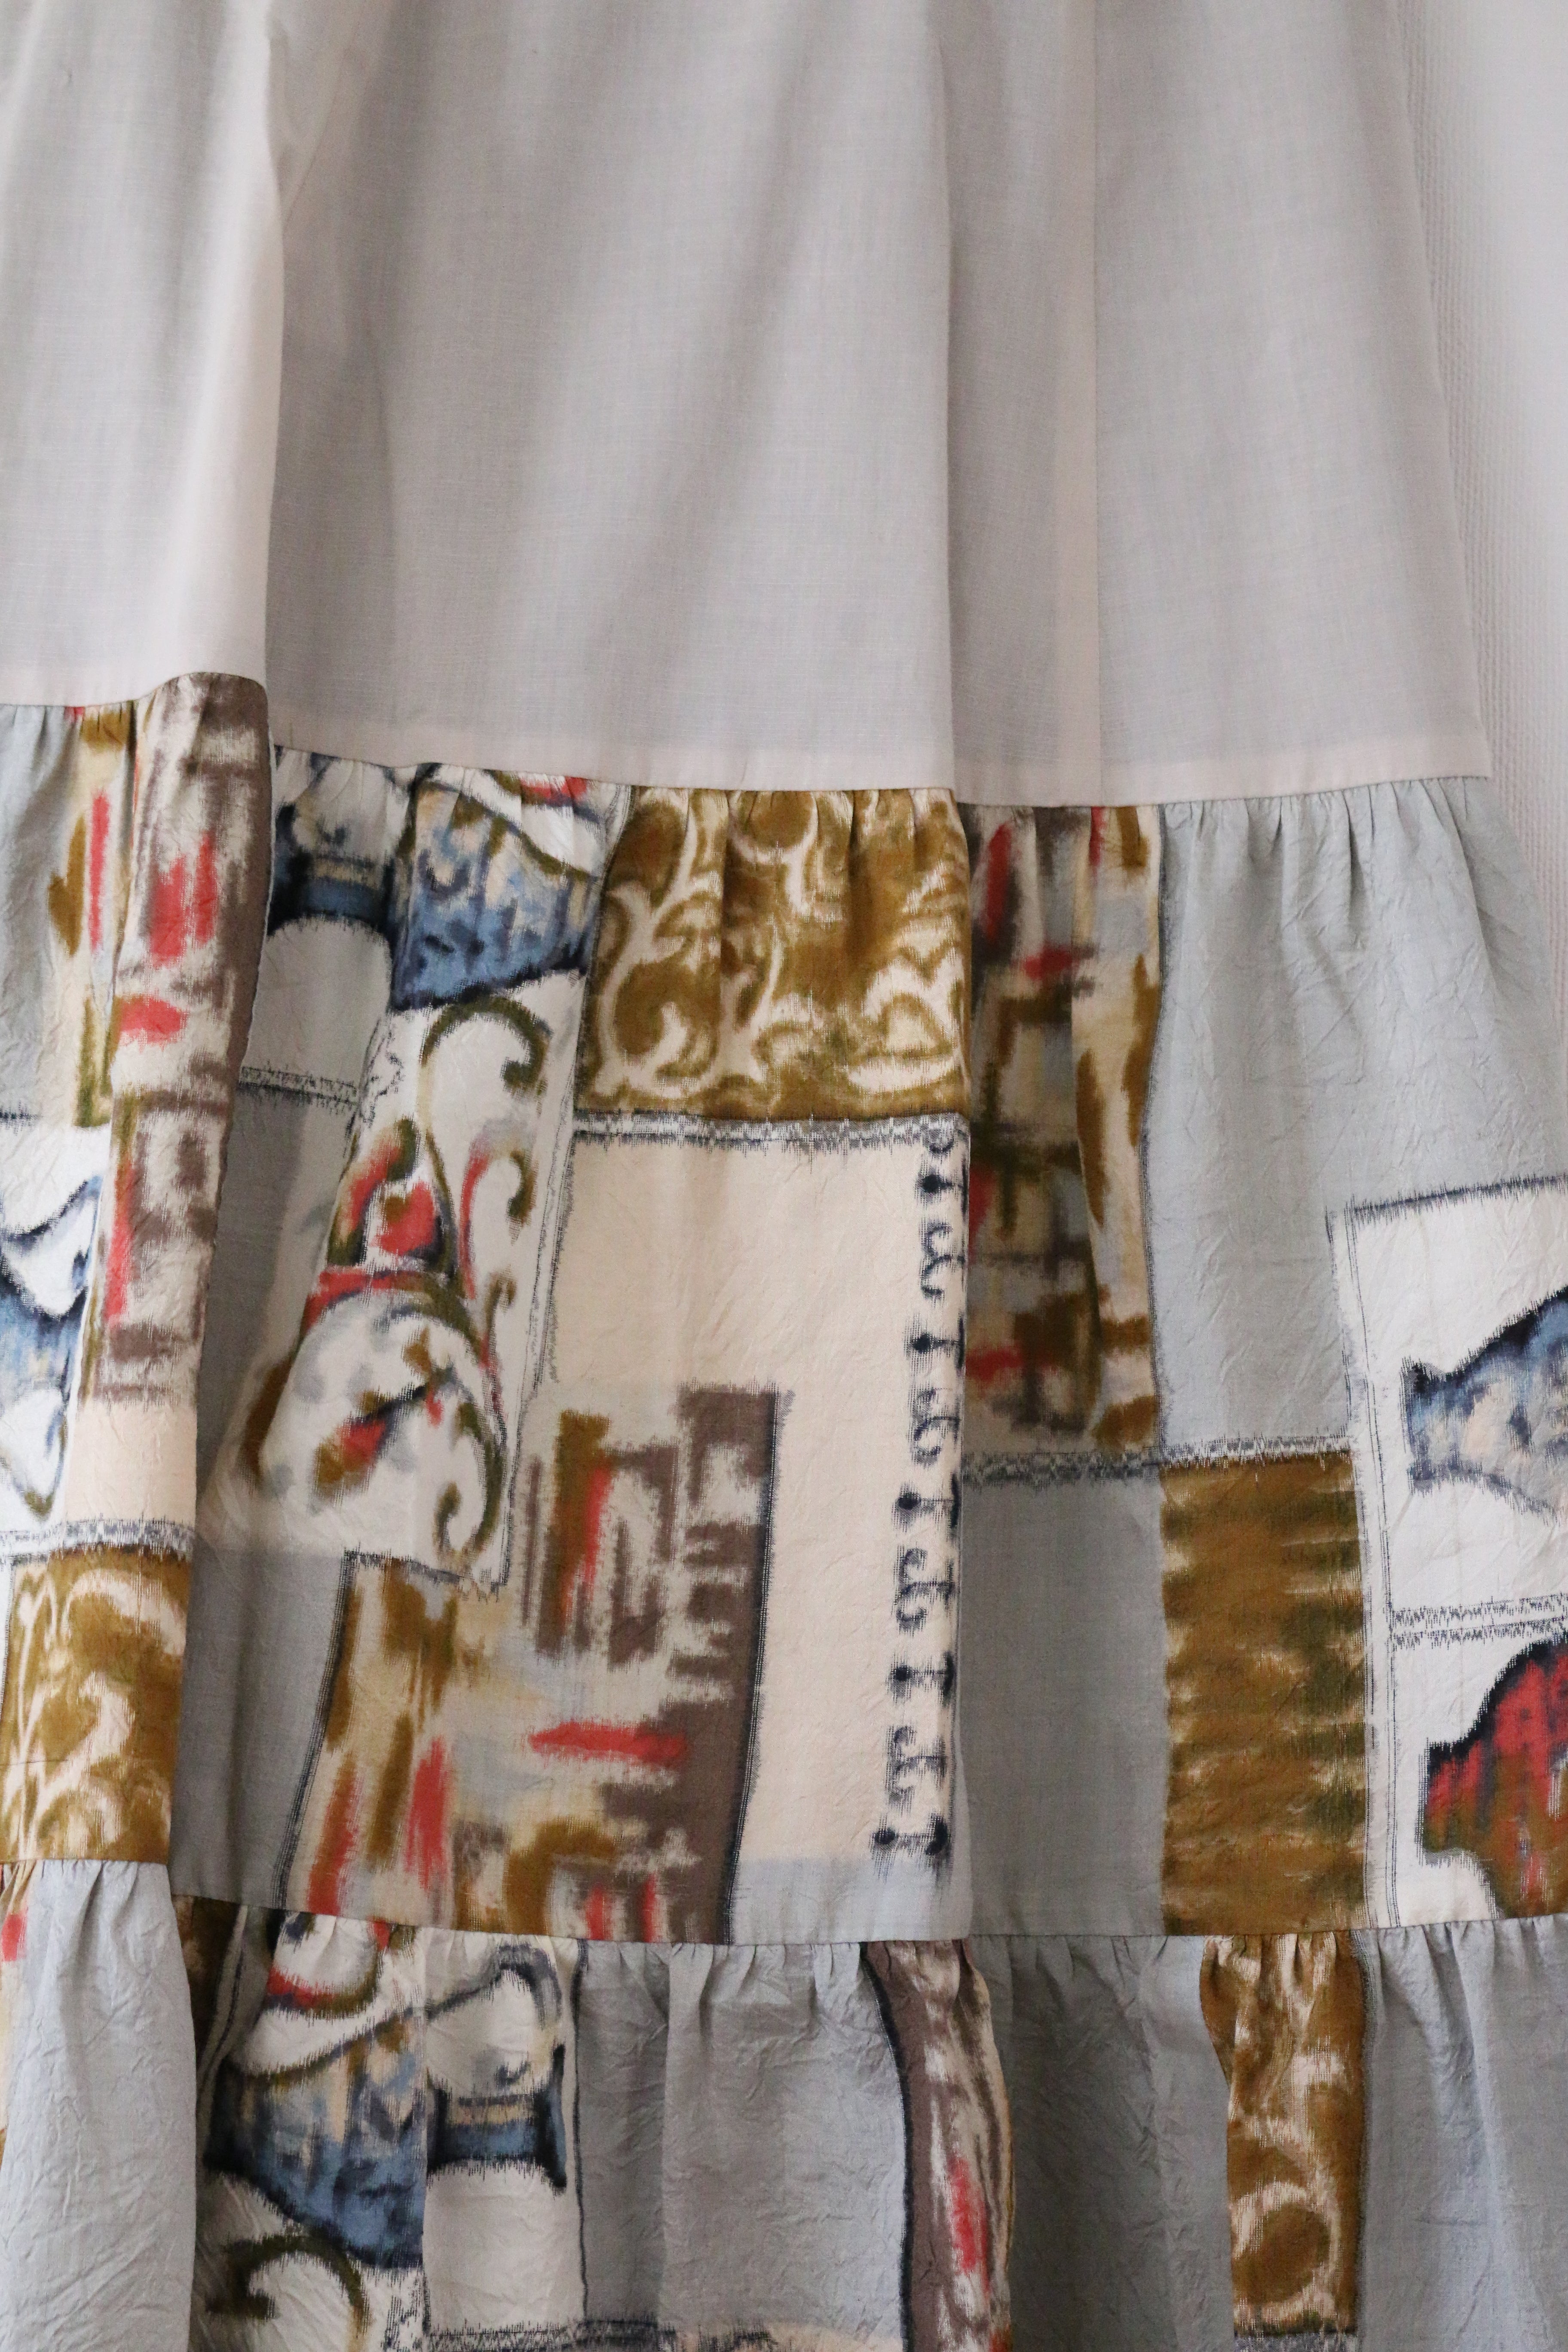 Tsubo -Meisen Teayard Skirt beige-